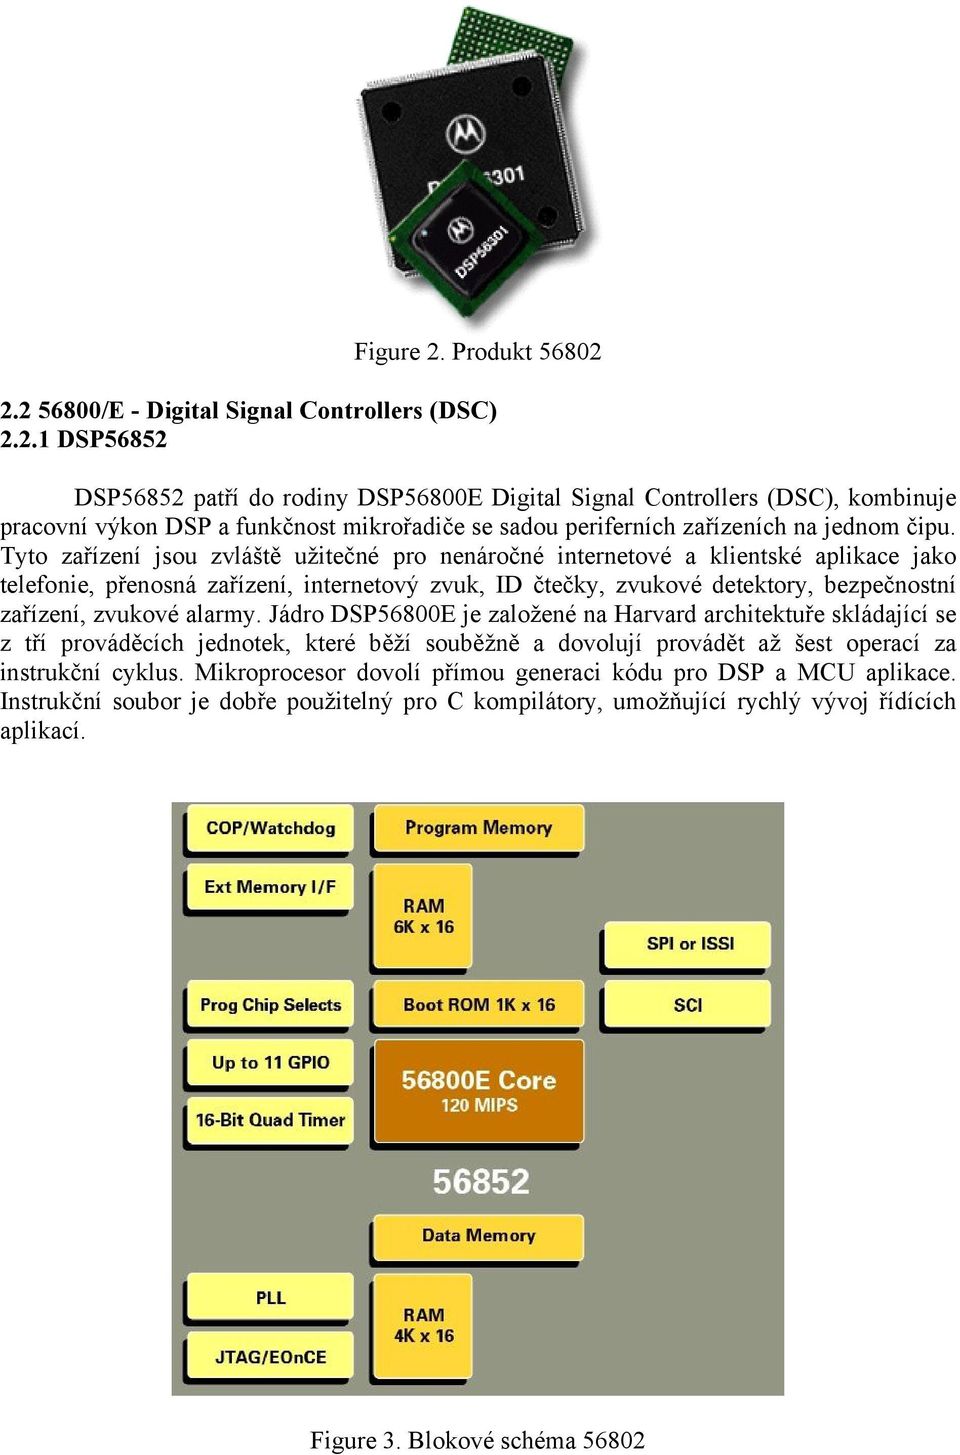 alarmy. Jádro DSP56800E je založené na Harvard architektuře skládající se z tří prováděcích jednotek, které běží souběžně a dovolují provádět až šest operací za instrukční cyklus.